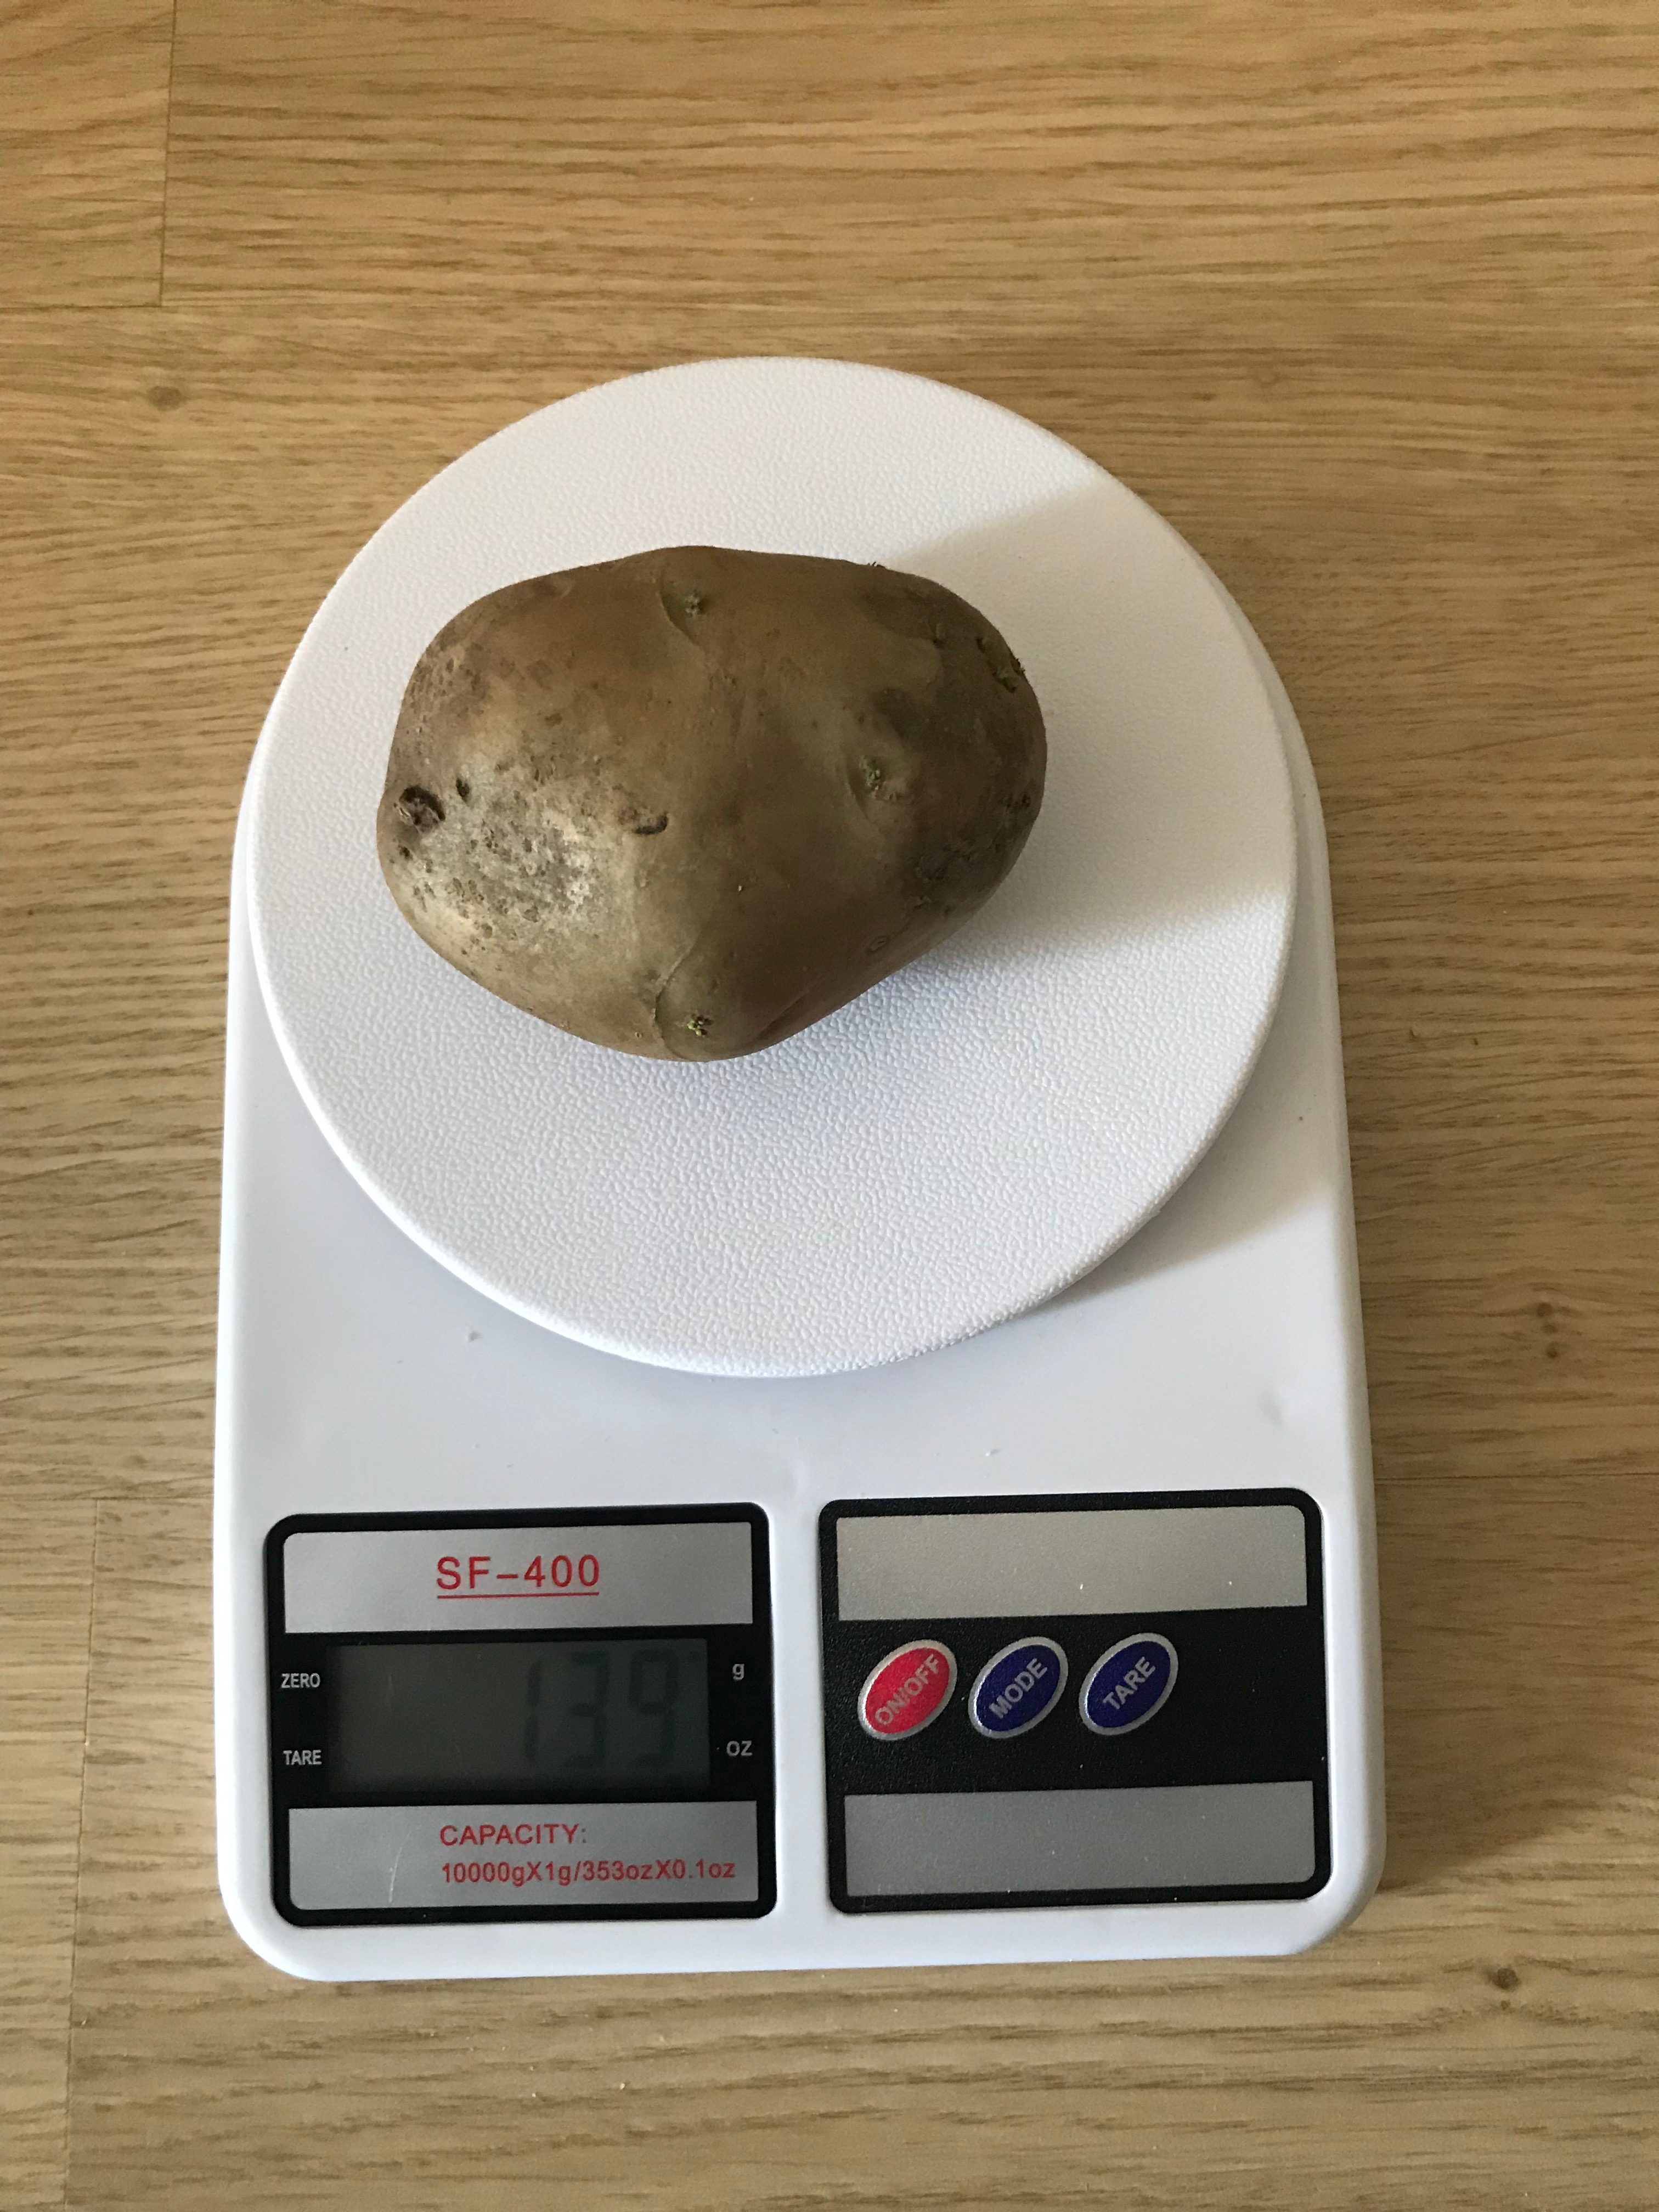 1 vidēja lieluma kartupeļa svars